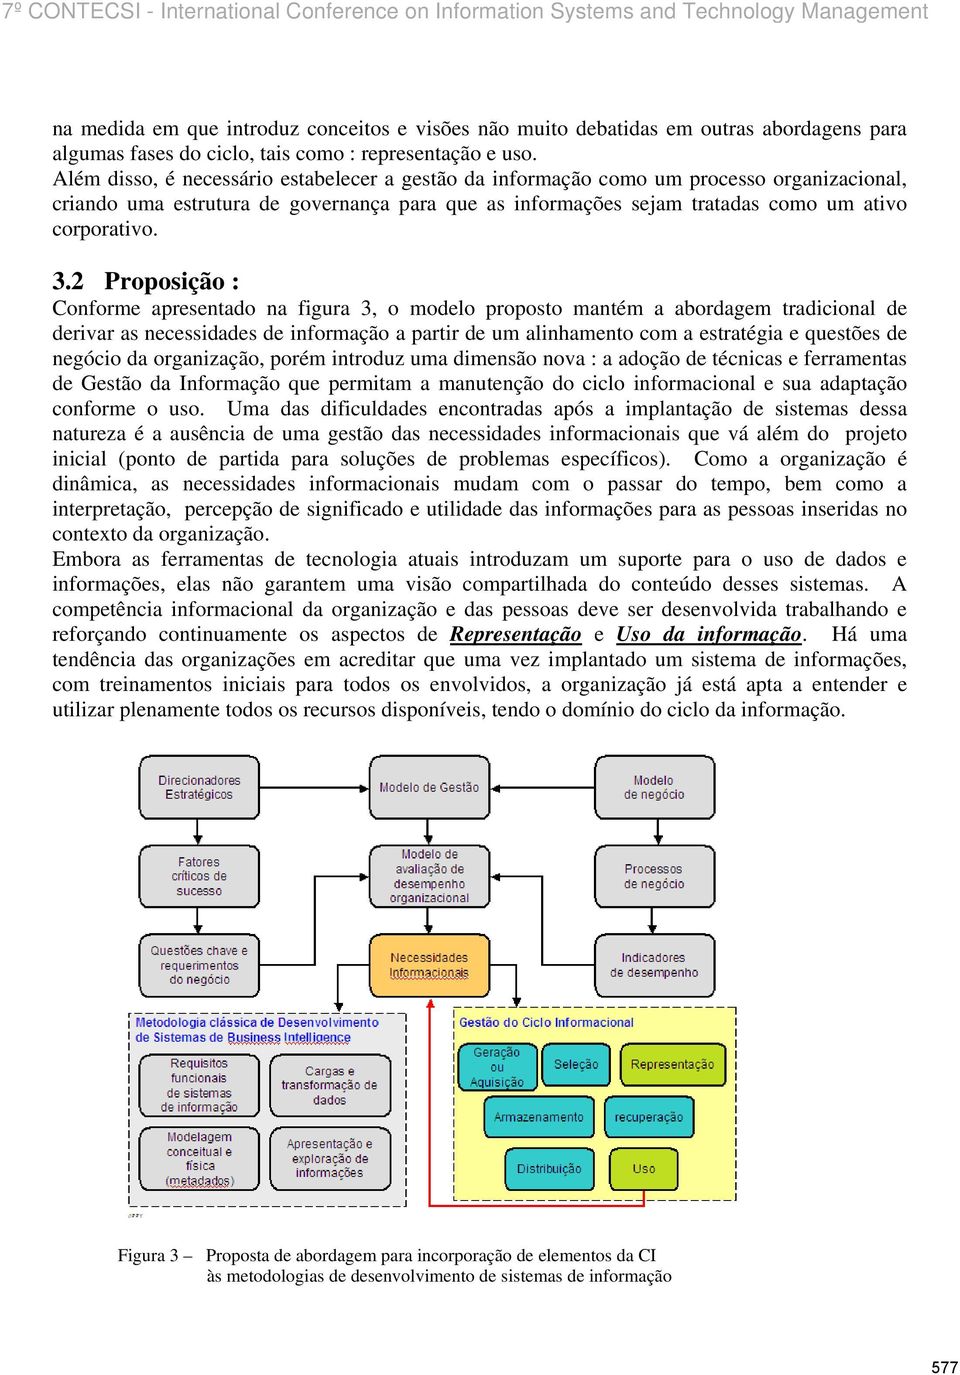 2 Proposição : Conforme apresentado na figura 3, o modelo proposto mantém a abordagem tradicional de derivar as necessidades de informação a partir de um alinhamento com a estratégia e questões de